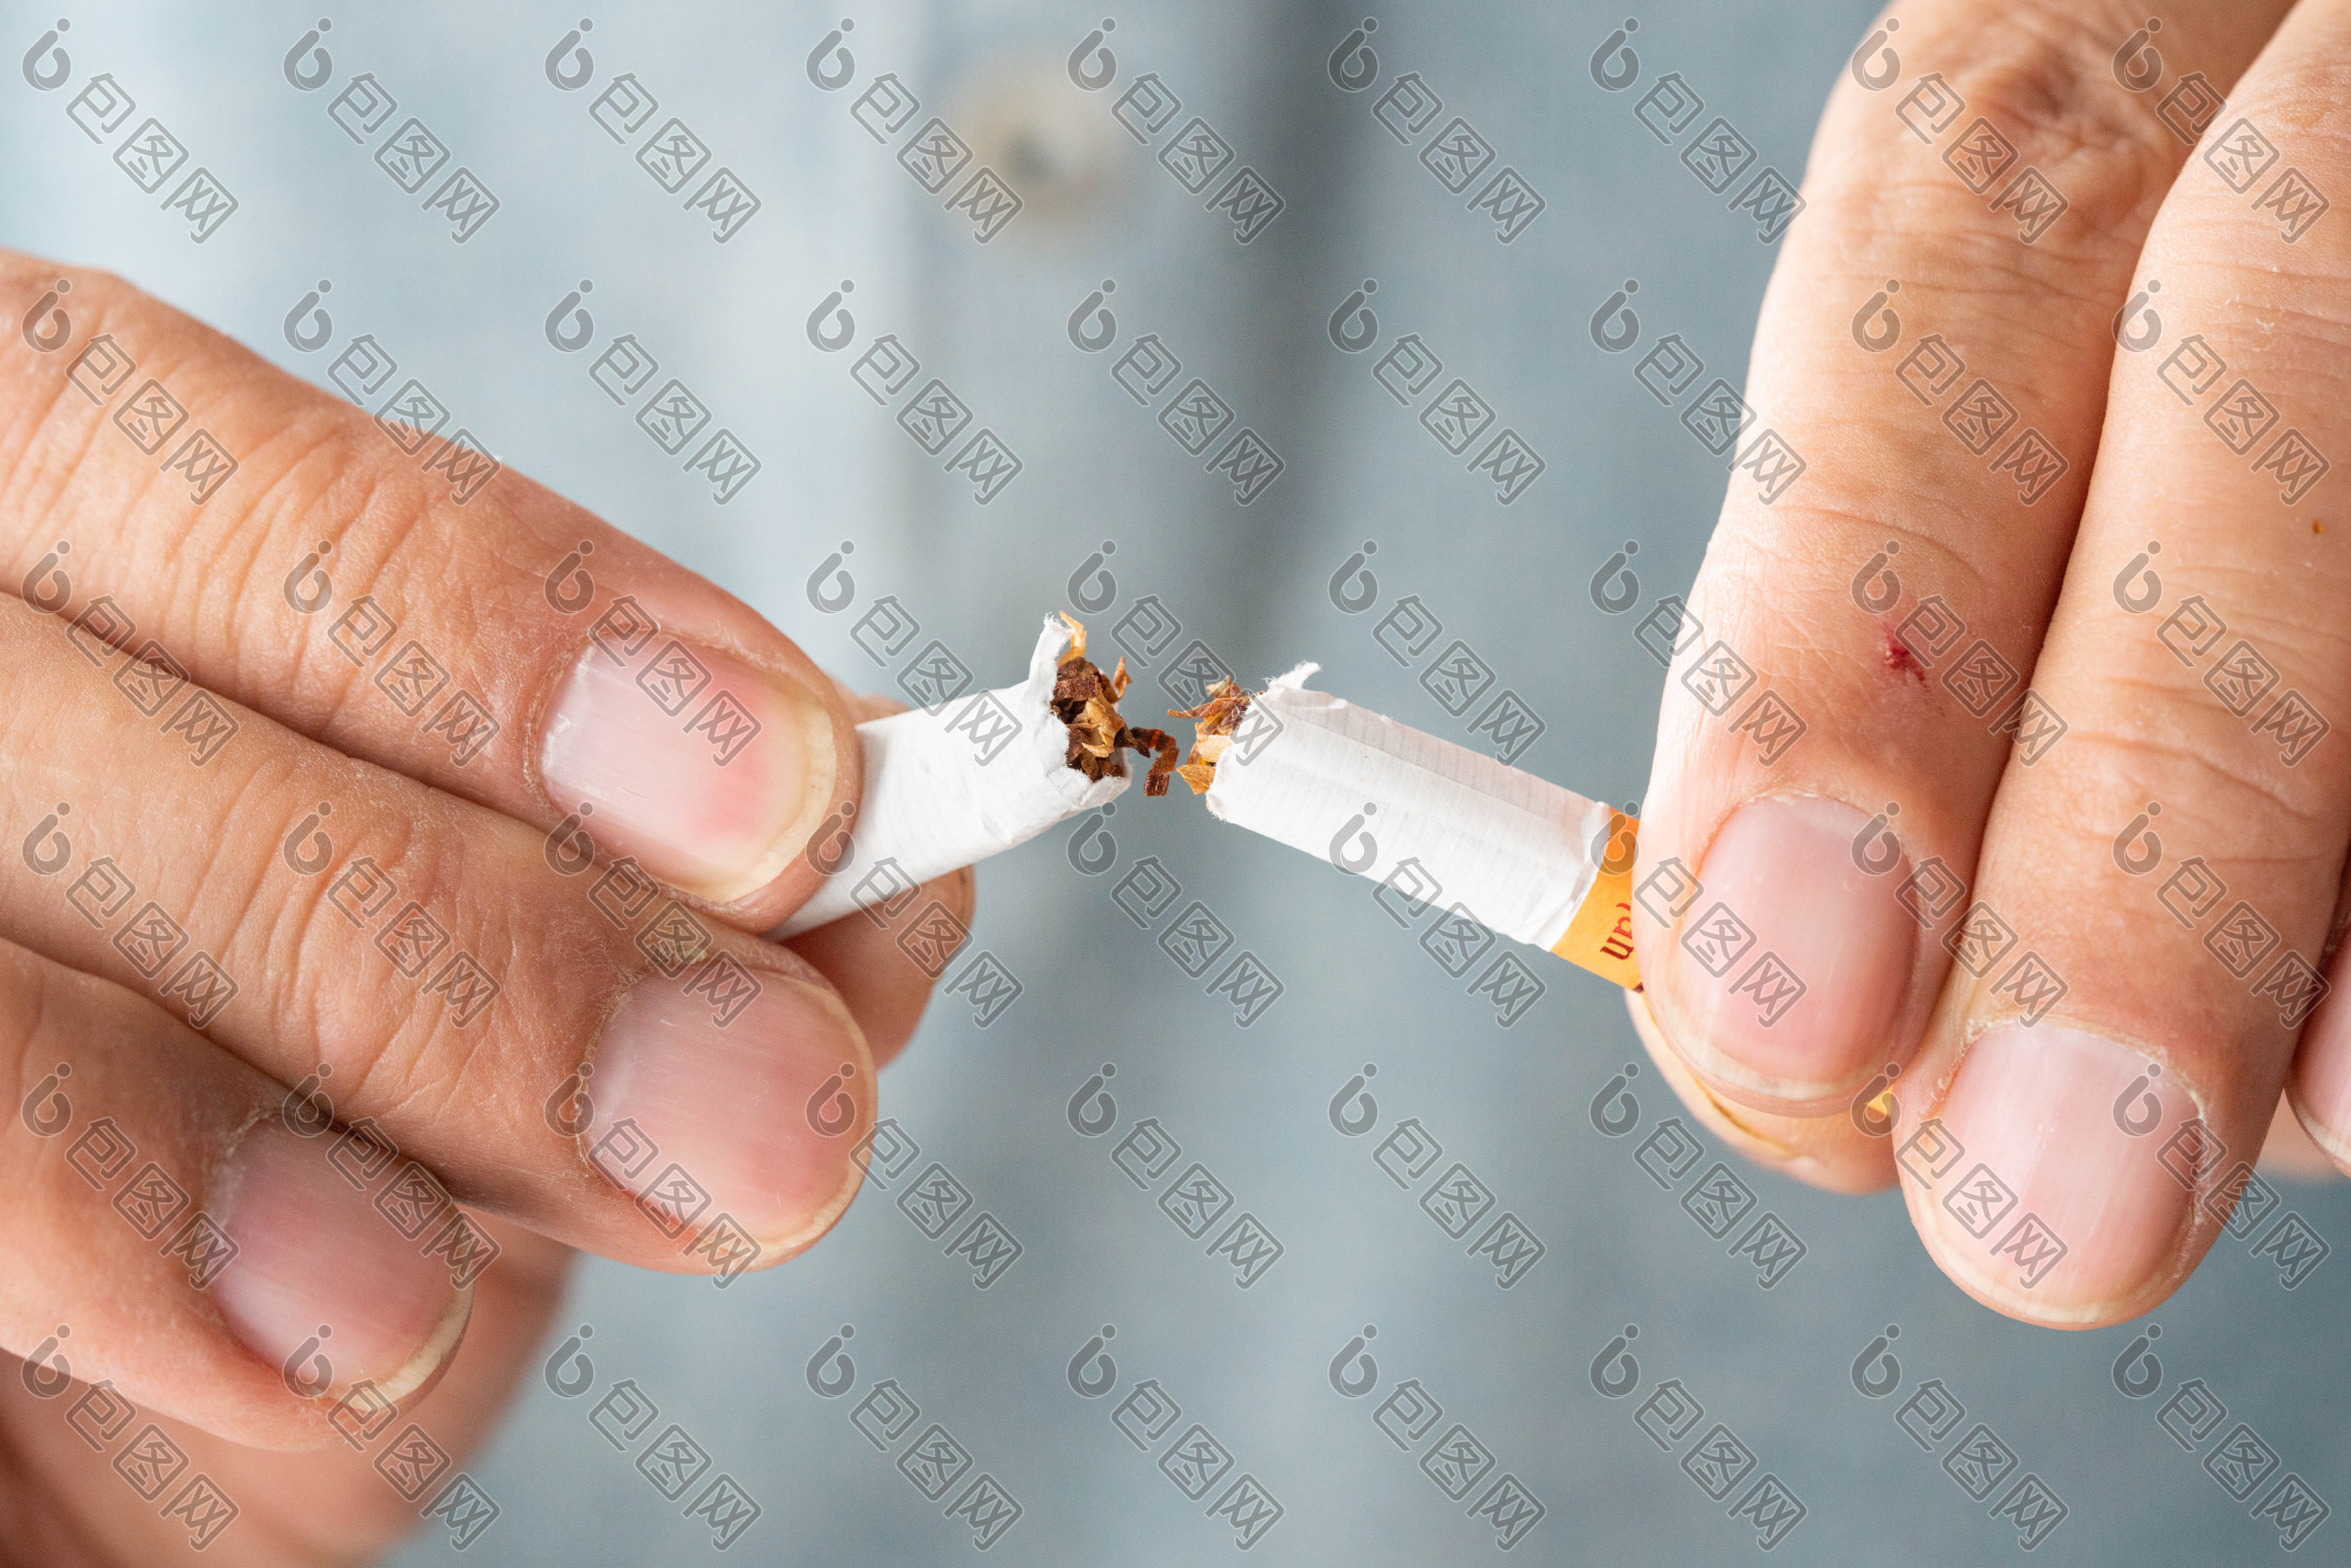 一个人把烟折断的图片图片